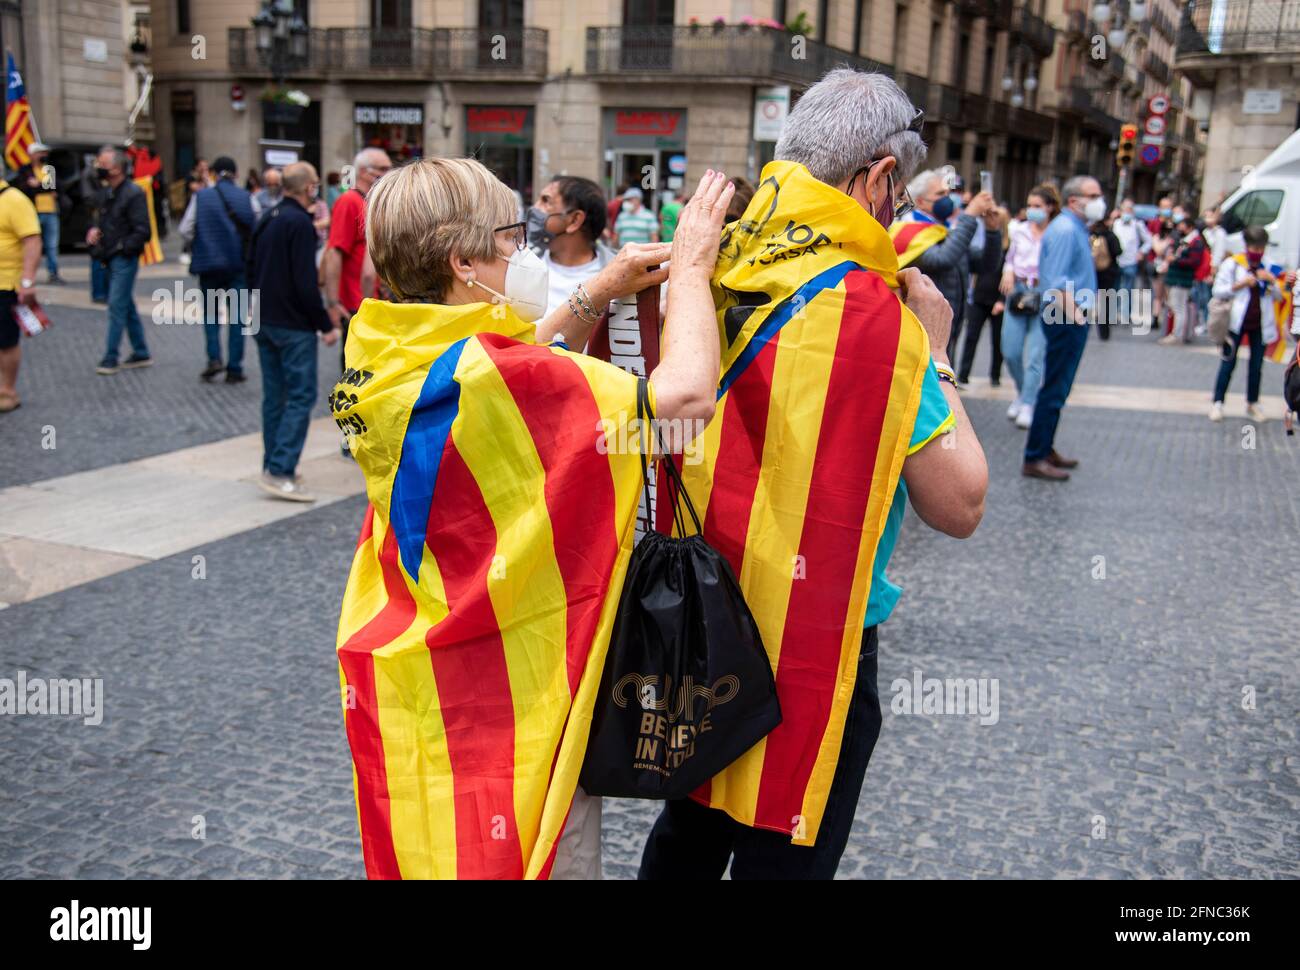 Cataluña ESPAÑA  La ANC exige un acuerdo a ERC y JxCat: 'Si hay elecciones nunca más estaremos a vuestro lado' Stock Photo